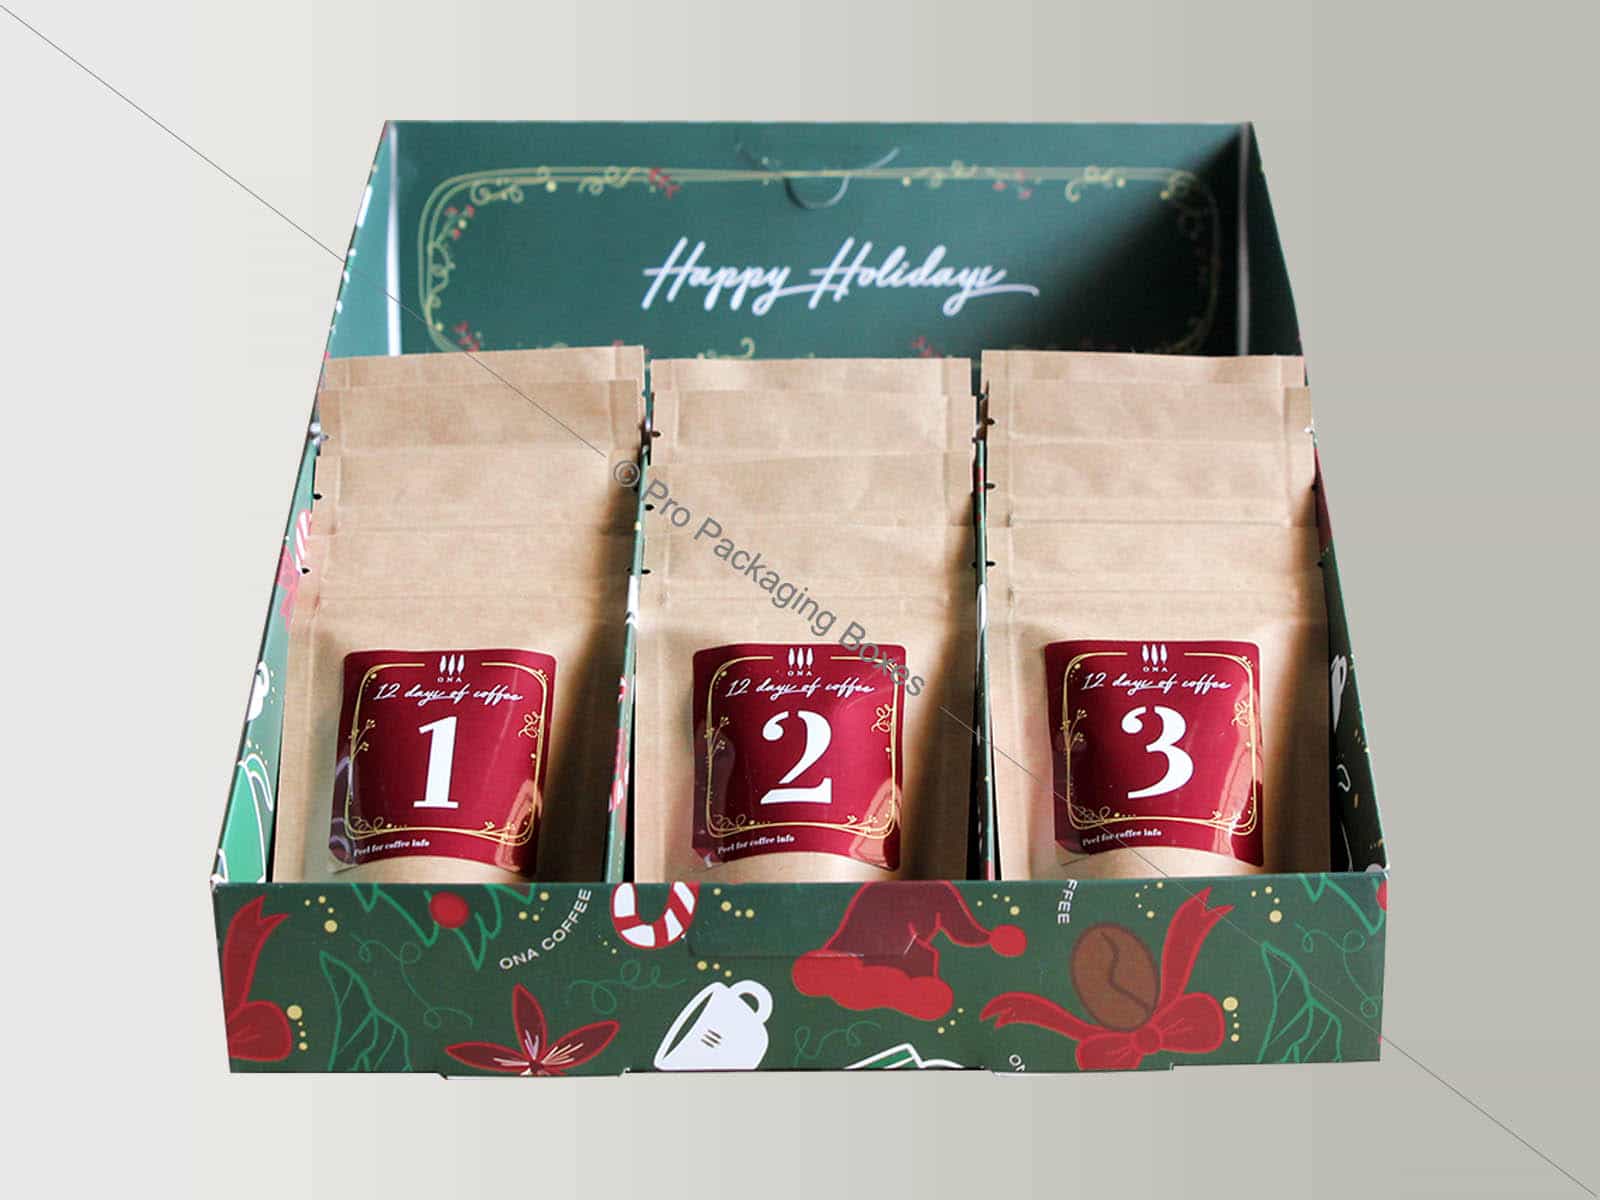 Custom printed coffee packaging boxes